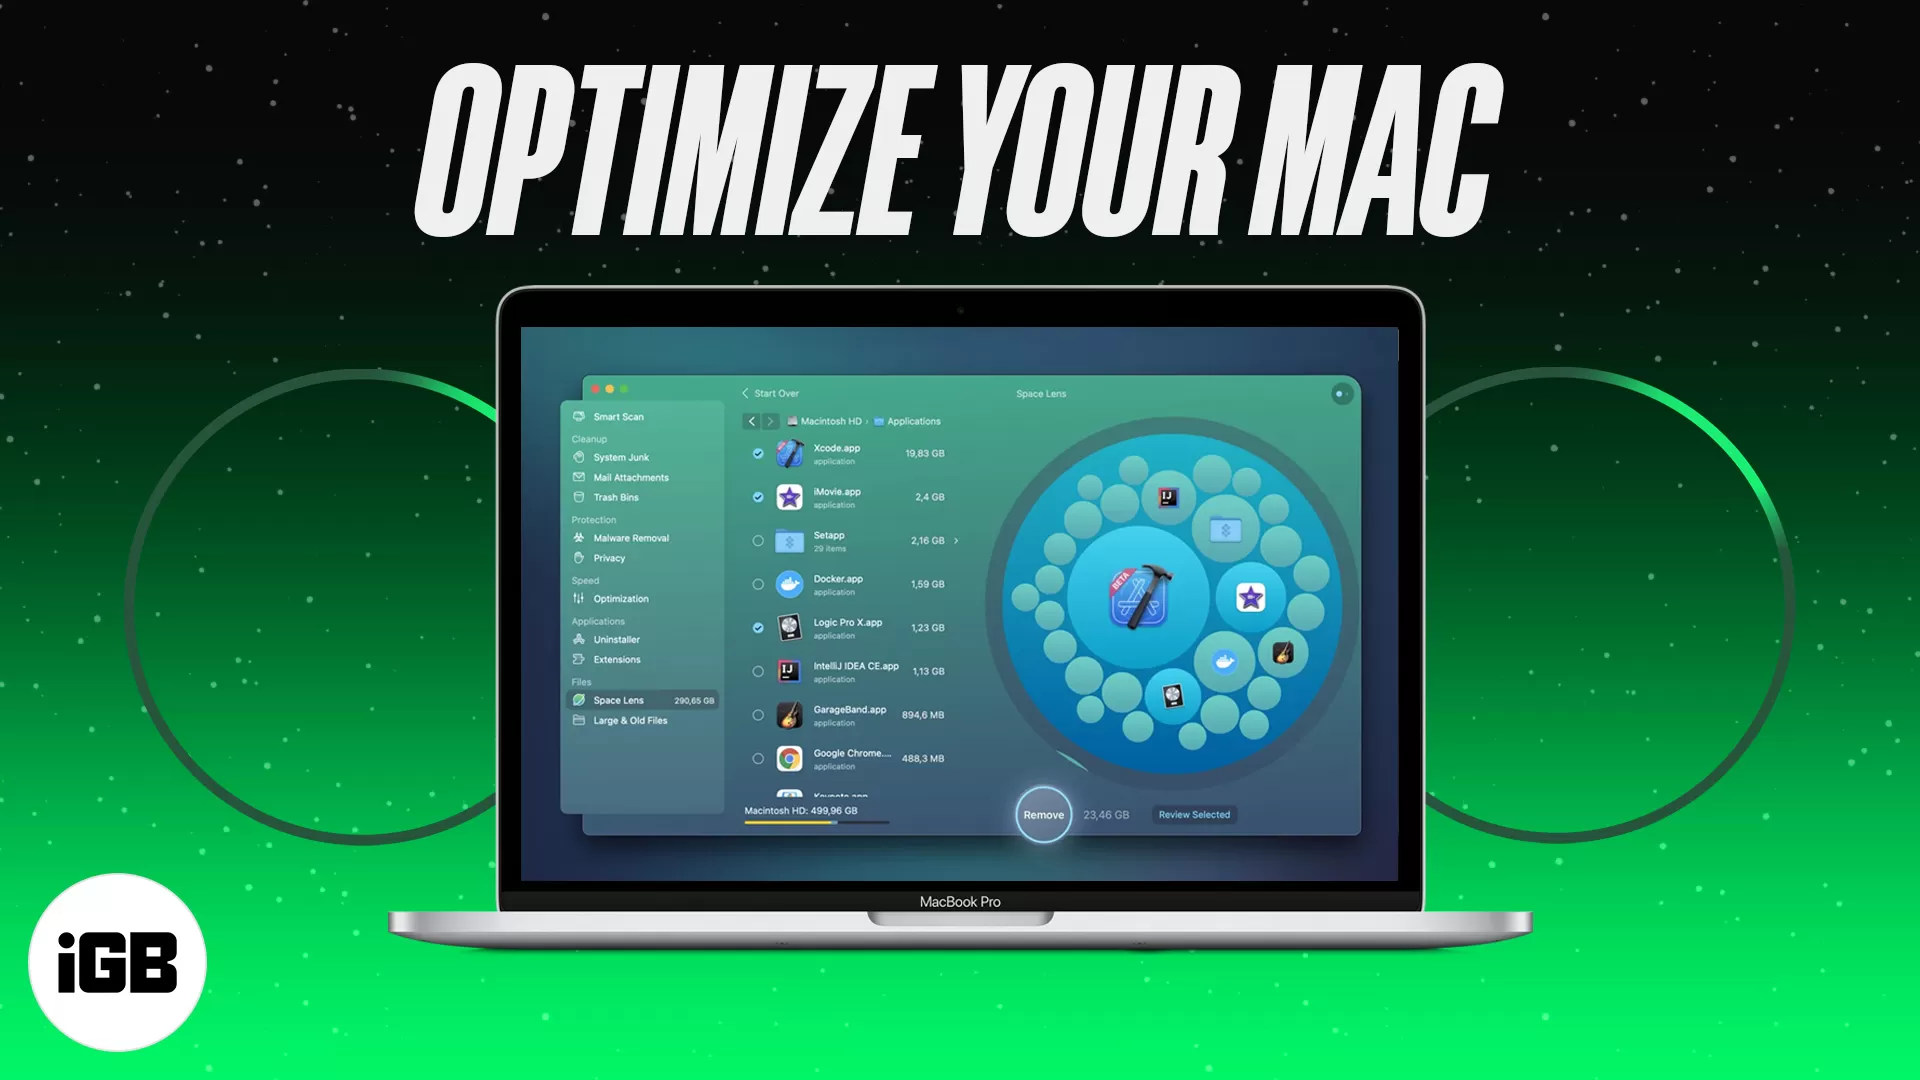 Лучшие приложения macOS для оптимизации вашего Mac в 2021 году